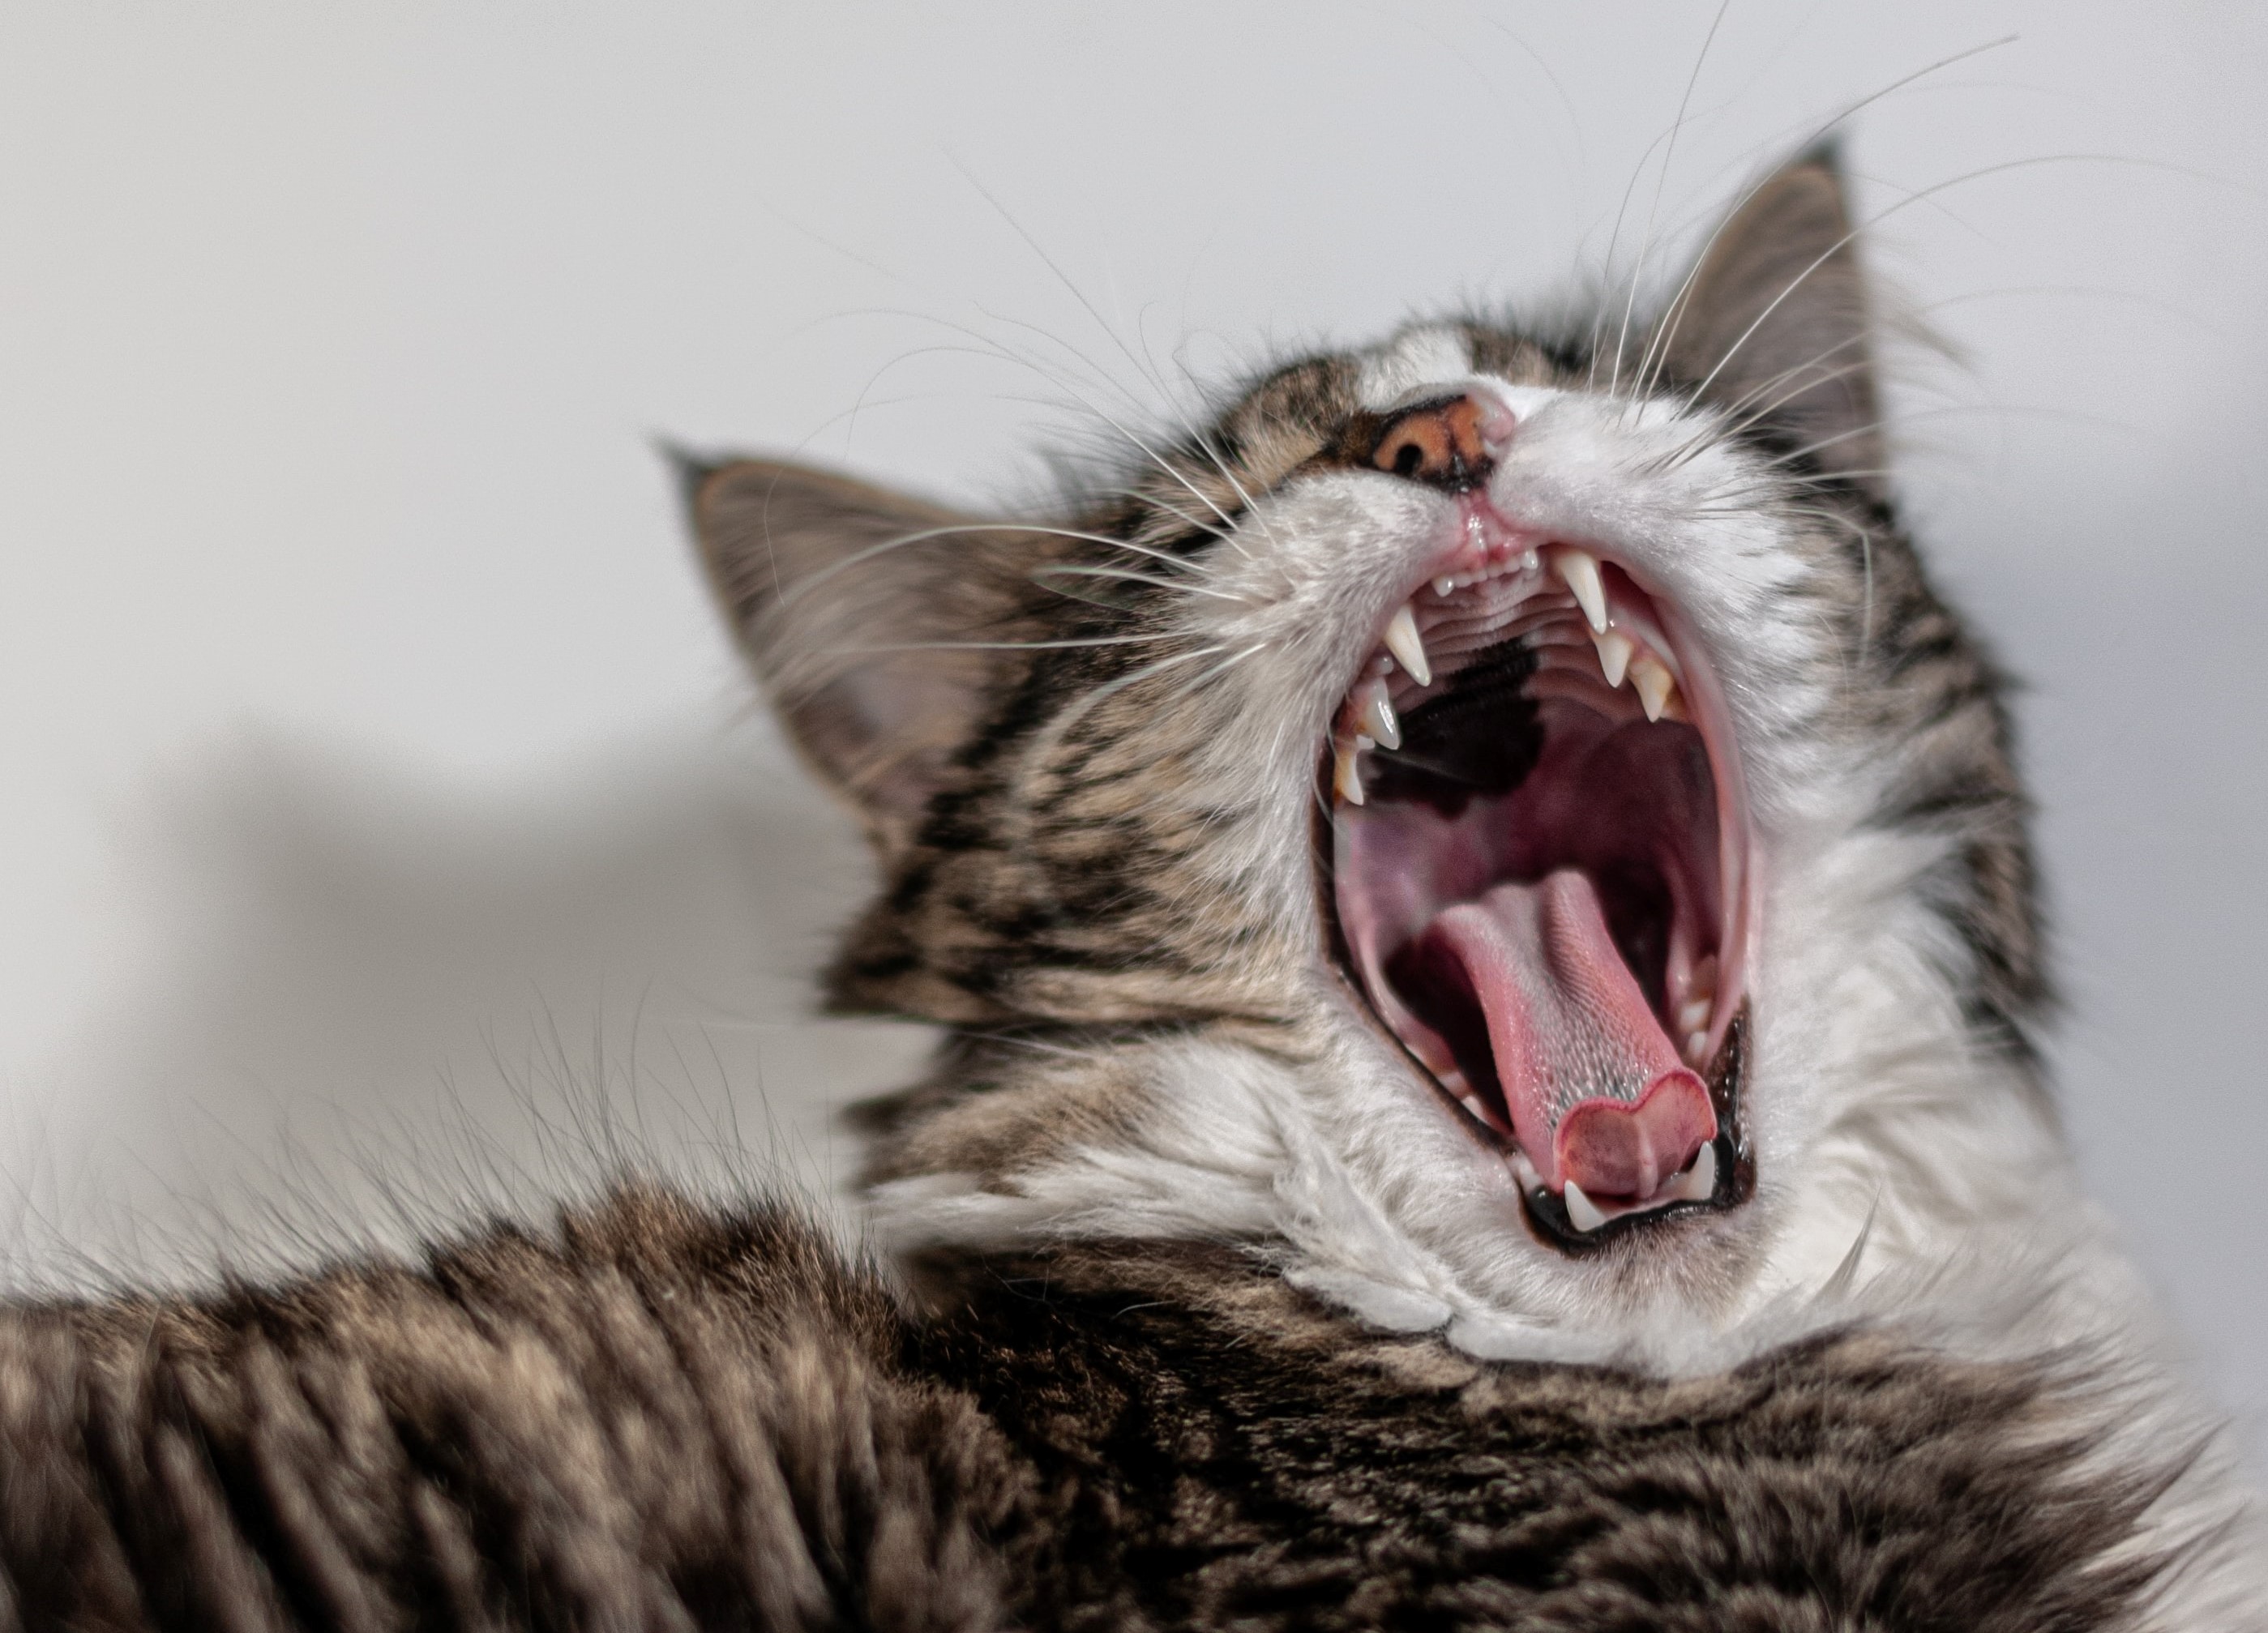 Goodwill inaktive kort Katte skal også til tandlægen | Dyrenes Beskyttelse